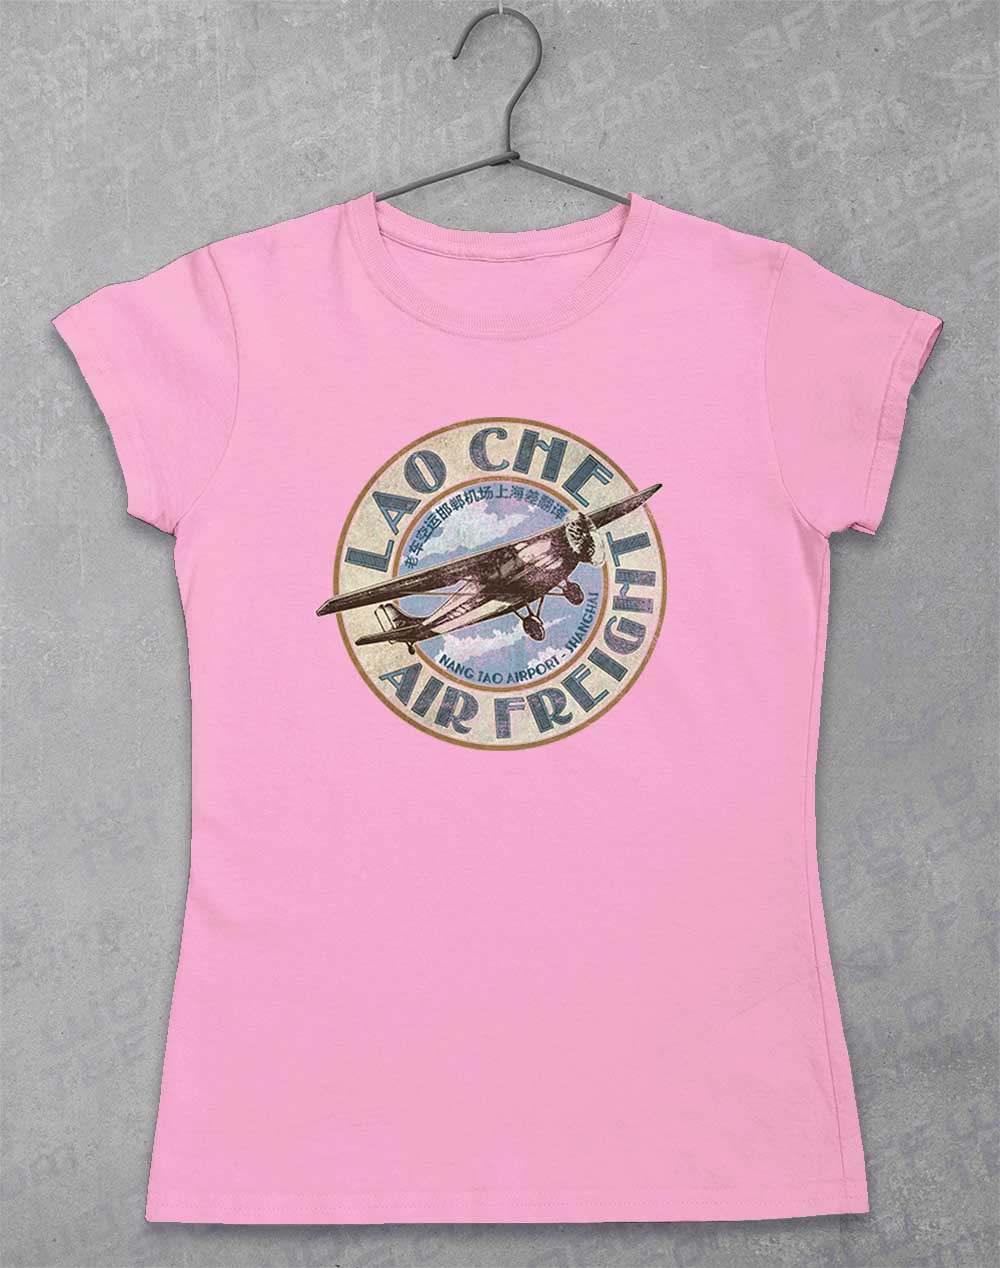 Light Pink - Lao Che Air Freight Women's T-Shirt